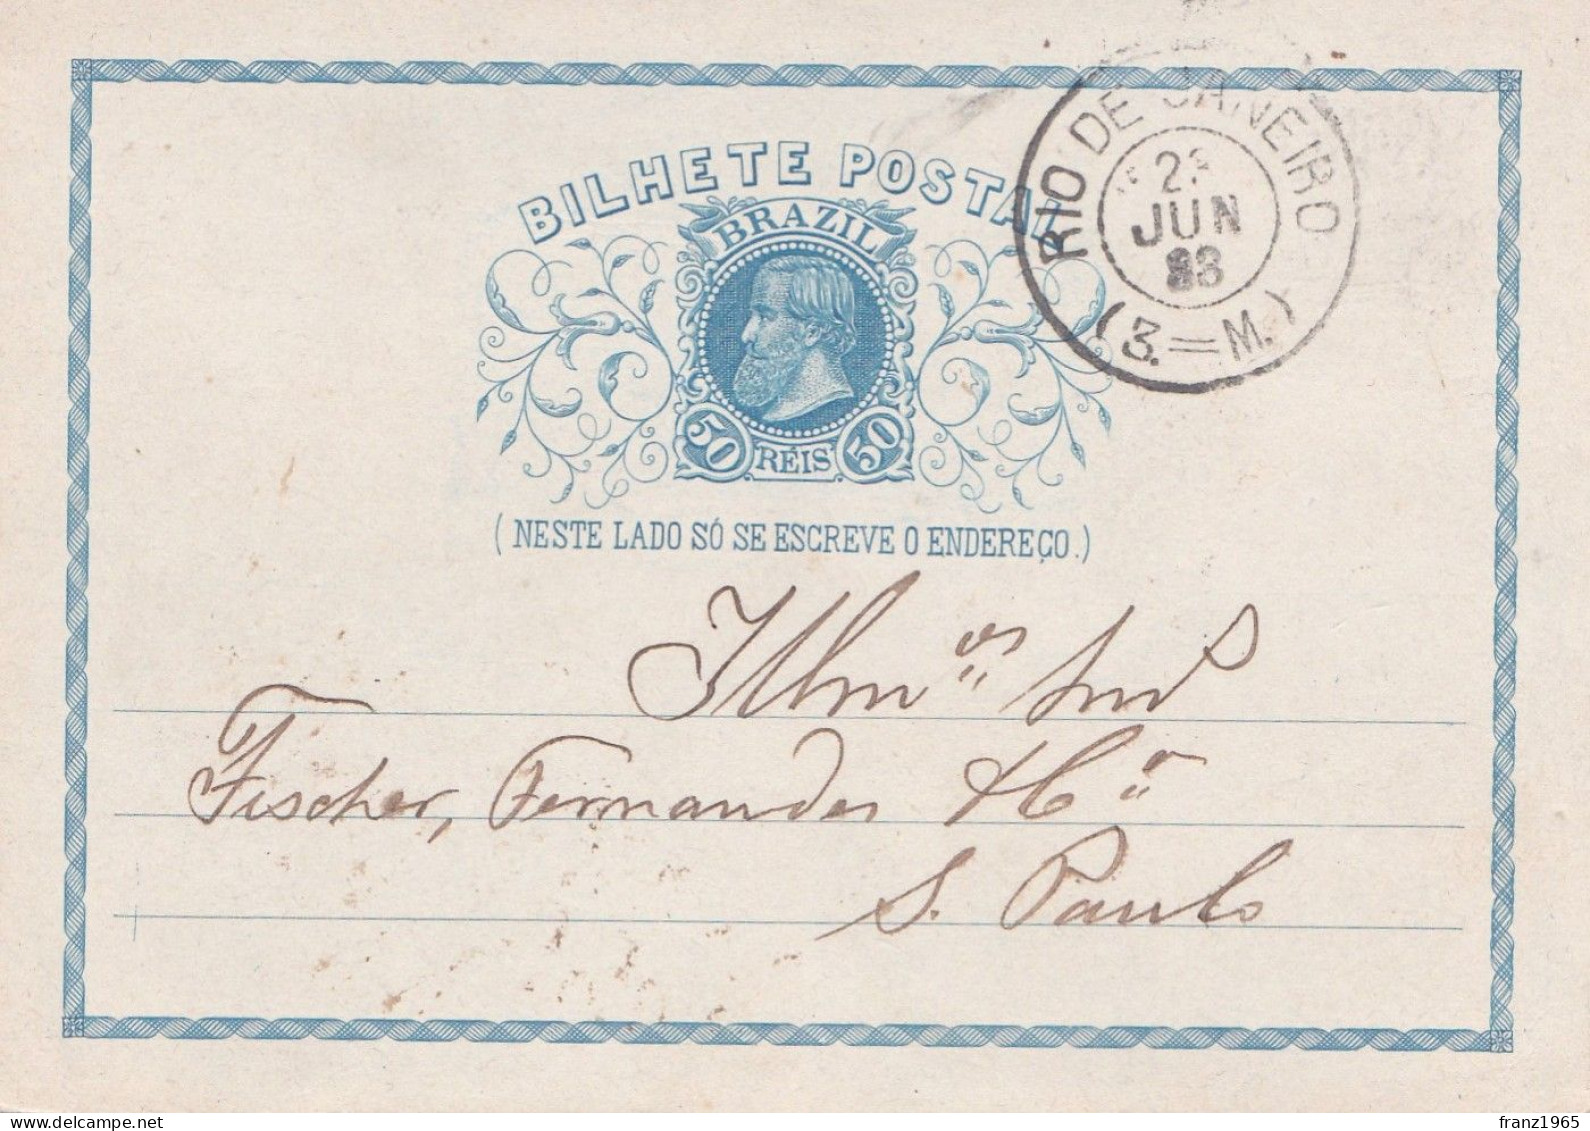 Bilhete Postal - Rio De Janeiro - 1883 - Cartas & Documentos